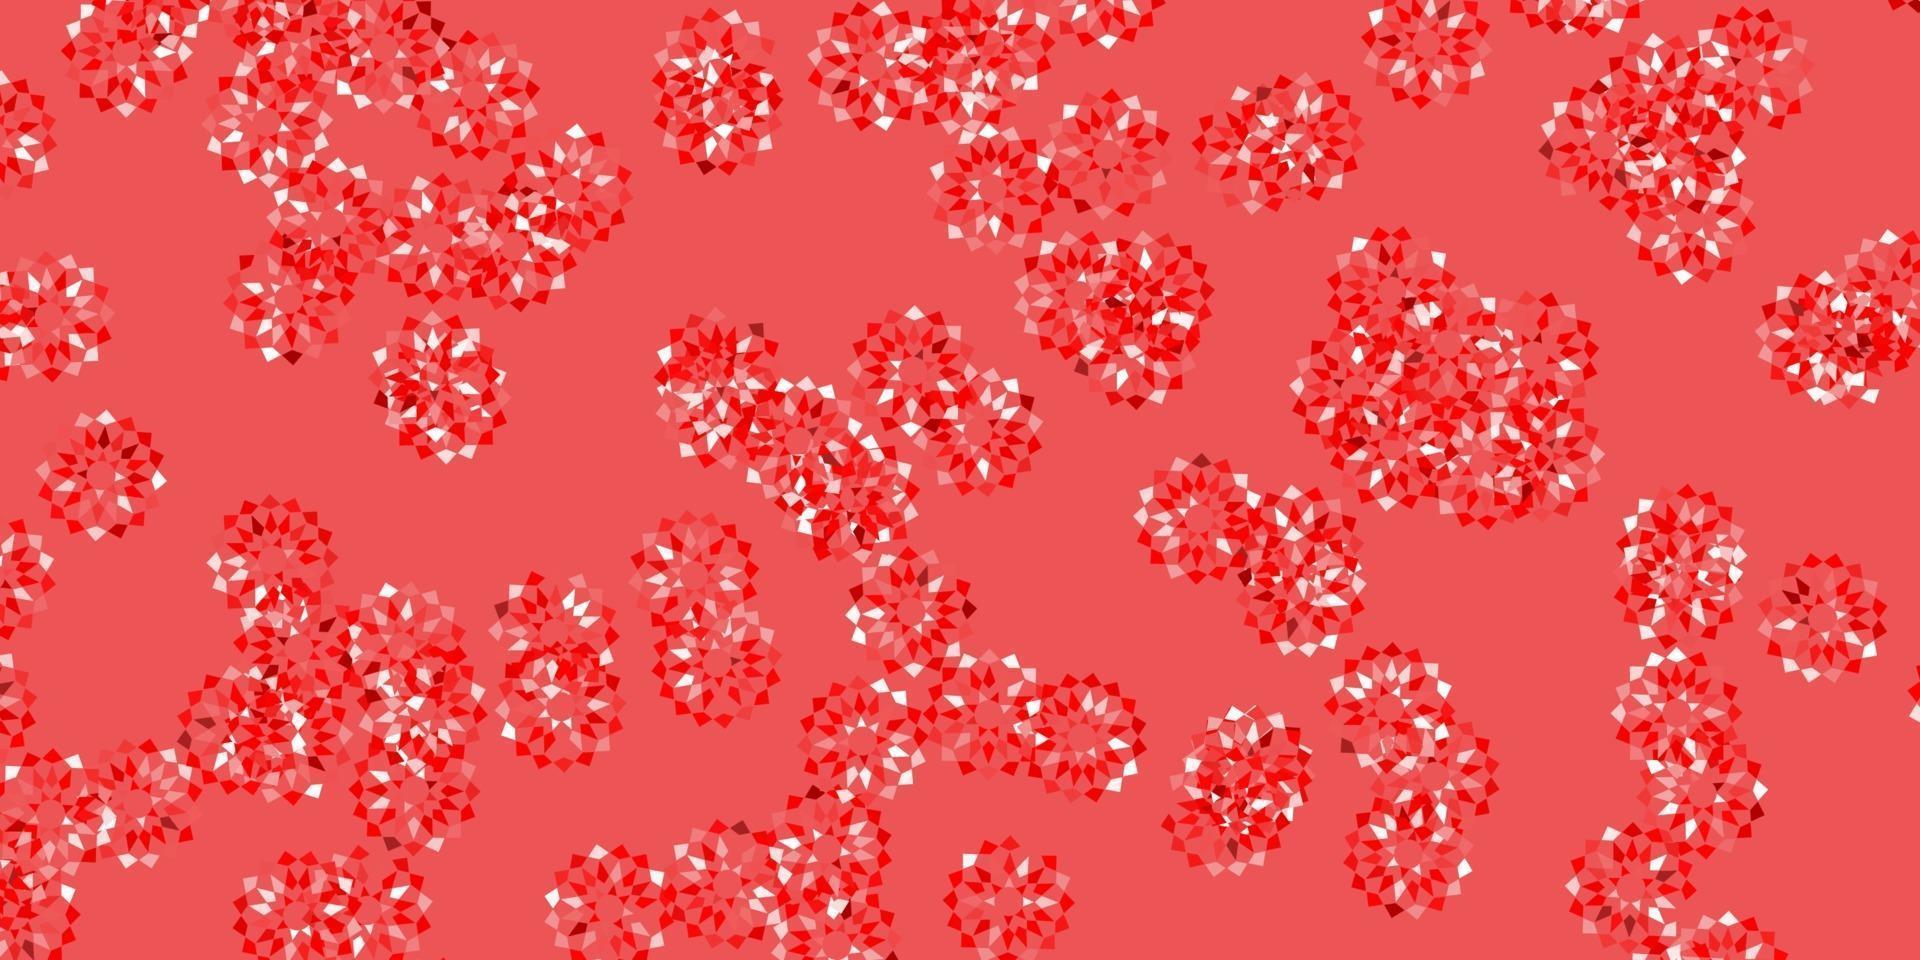 materiale illustrativo naturale di vettore rosso chiaro con i fiori.